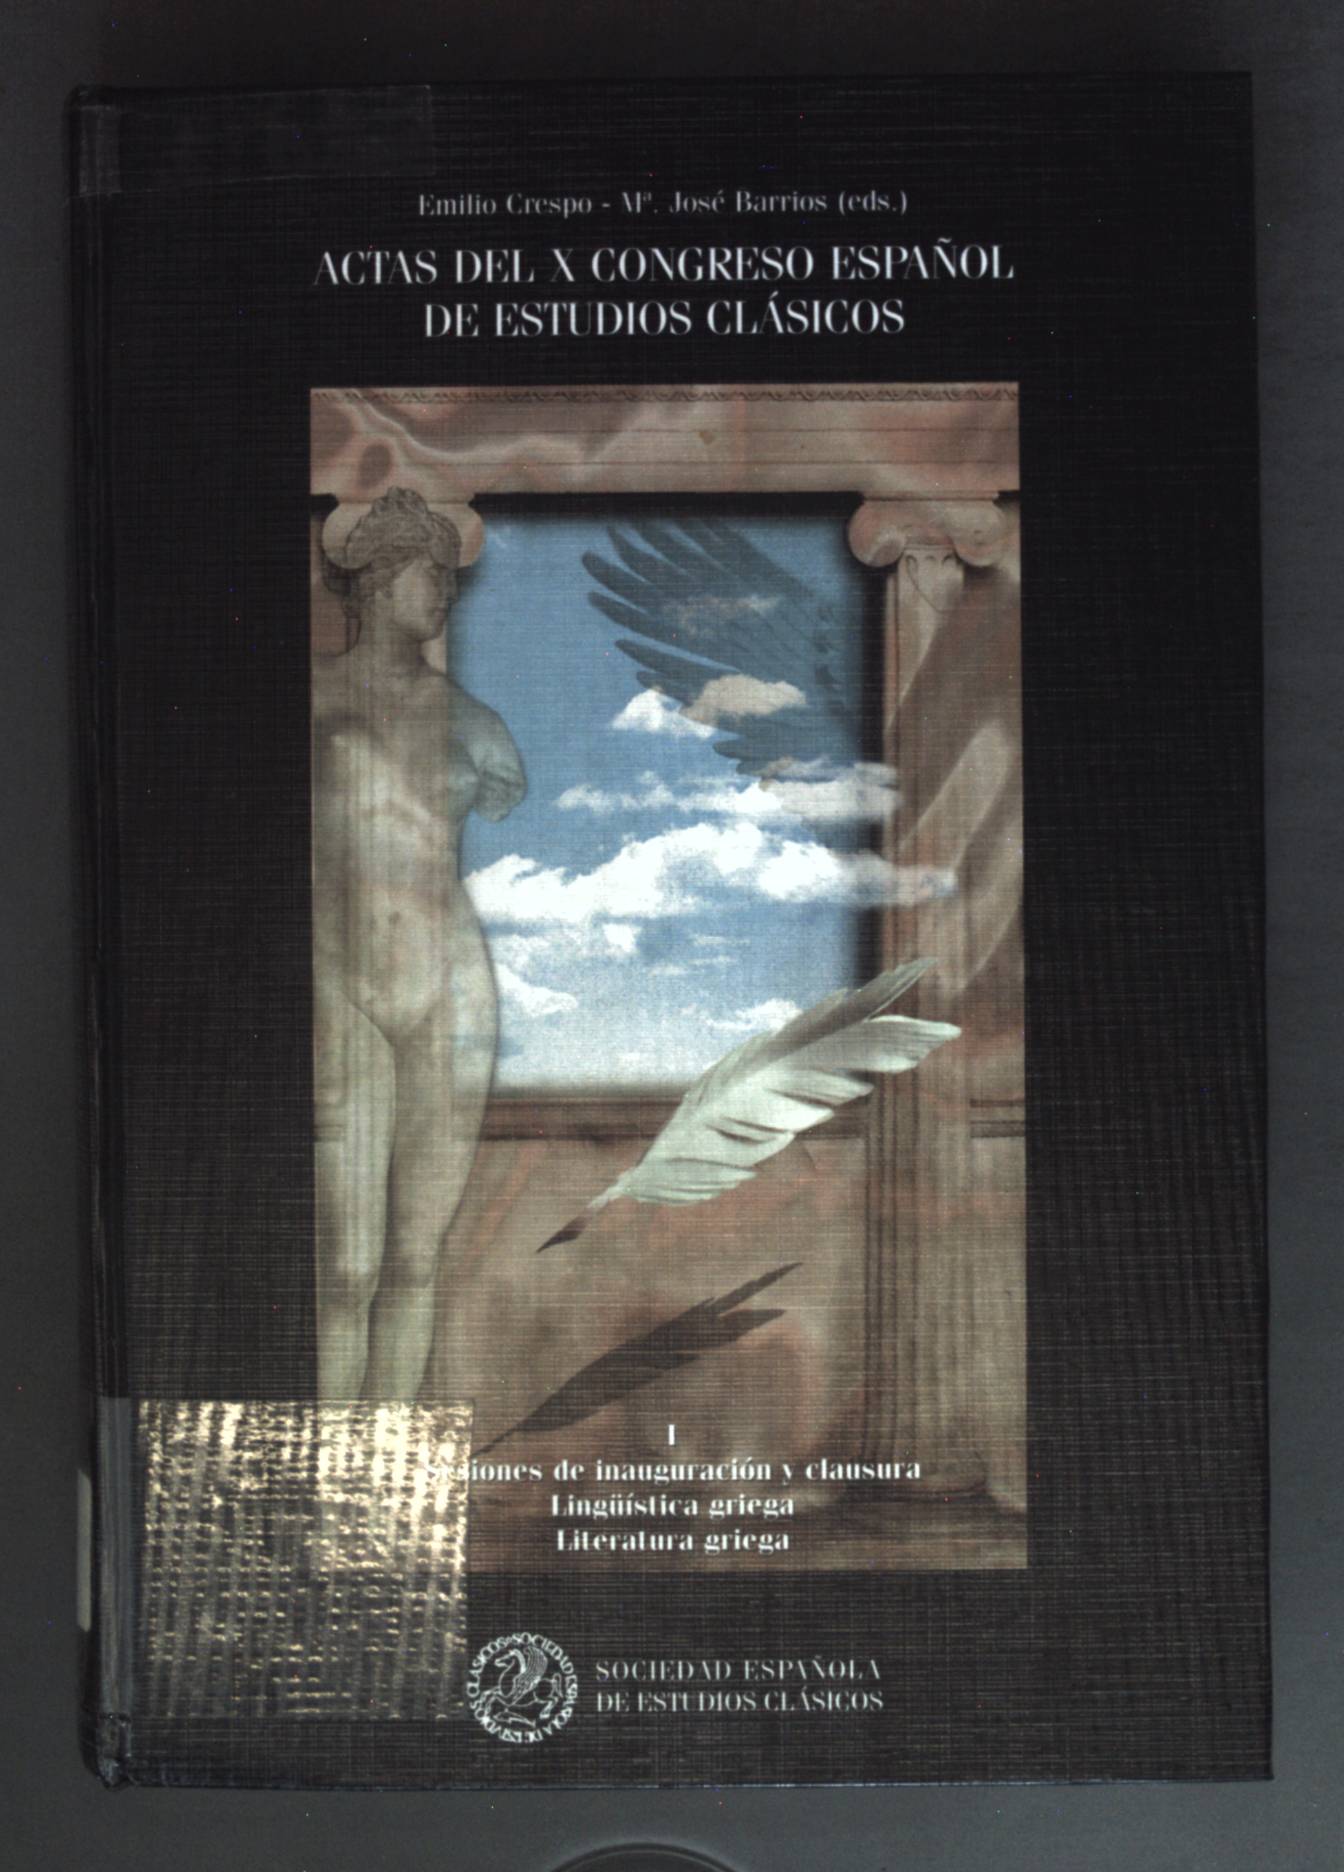 Actas del X Congreso Espanol de Estudios Clásicos: Vol. 1 - Lingüística griega, literatura griega. - Crespo, Güemes Emilio